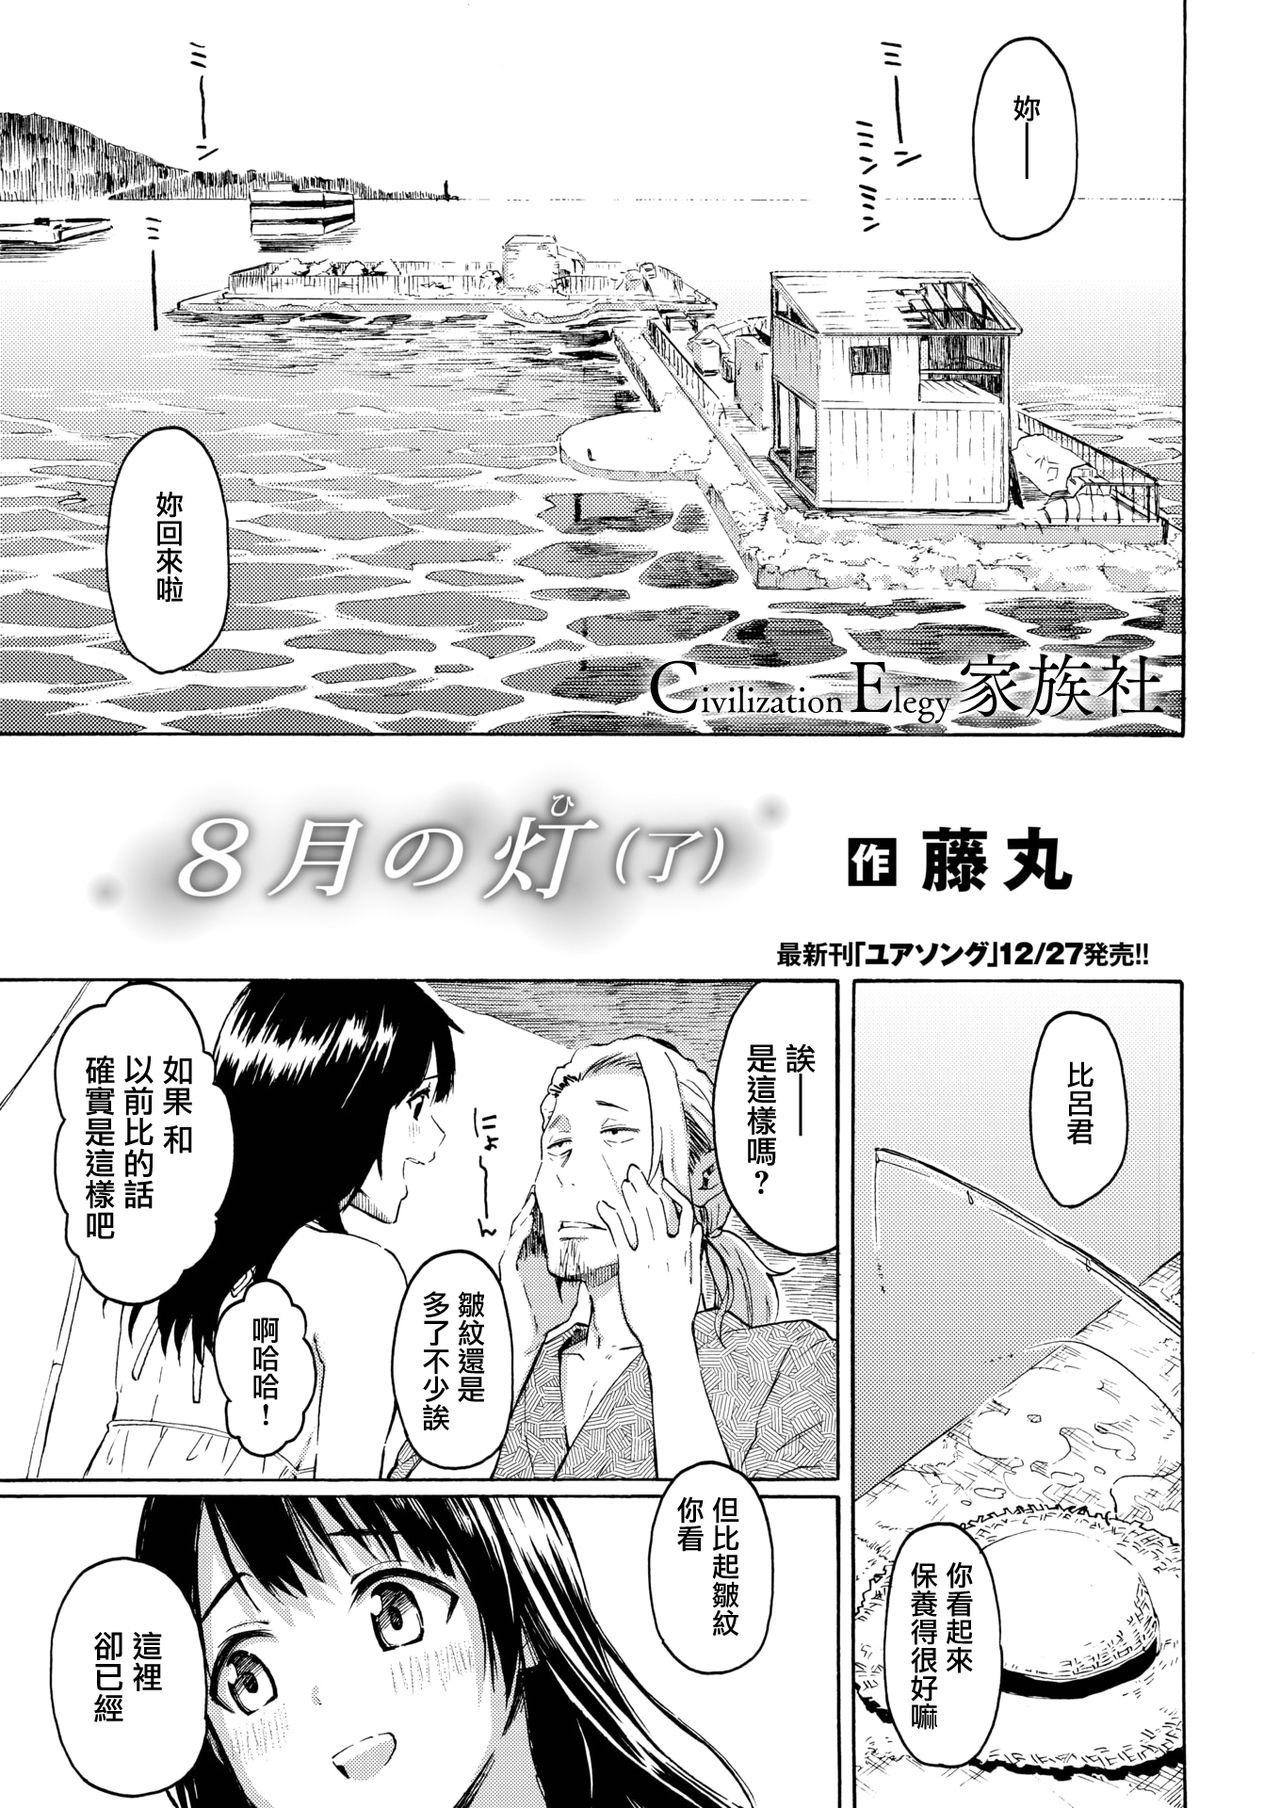 Morrita Hachigatsu no Hi Long - Page 4